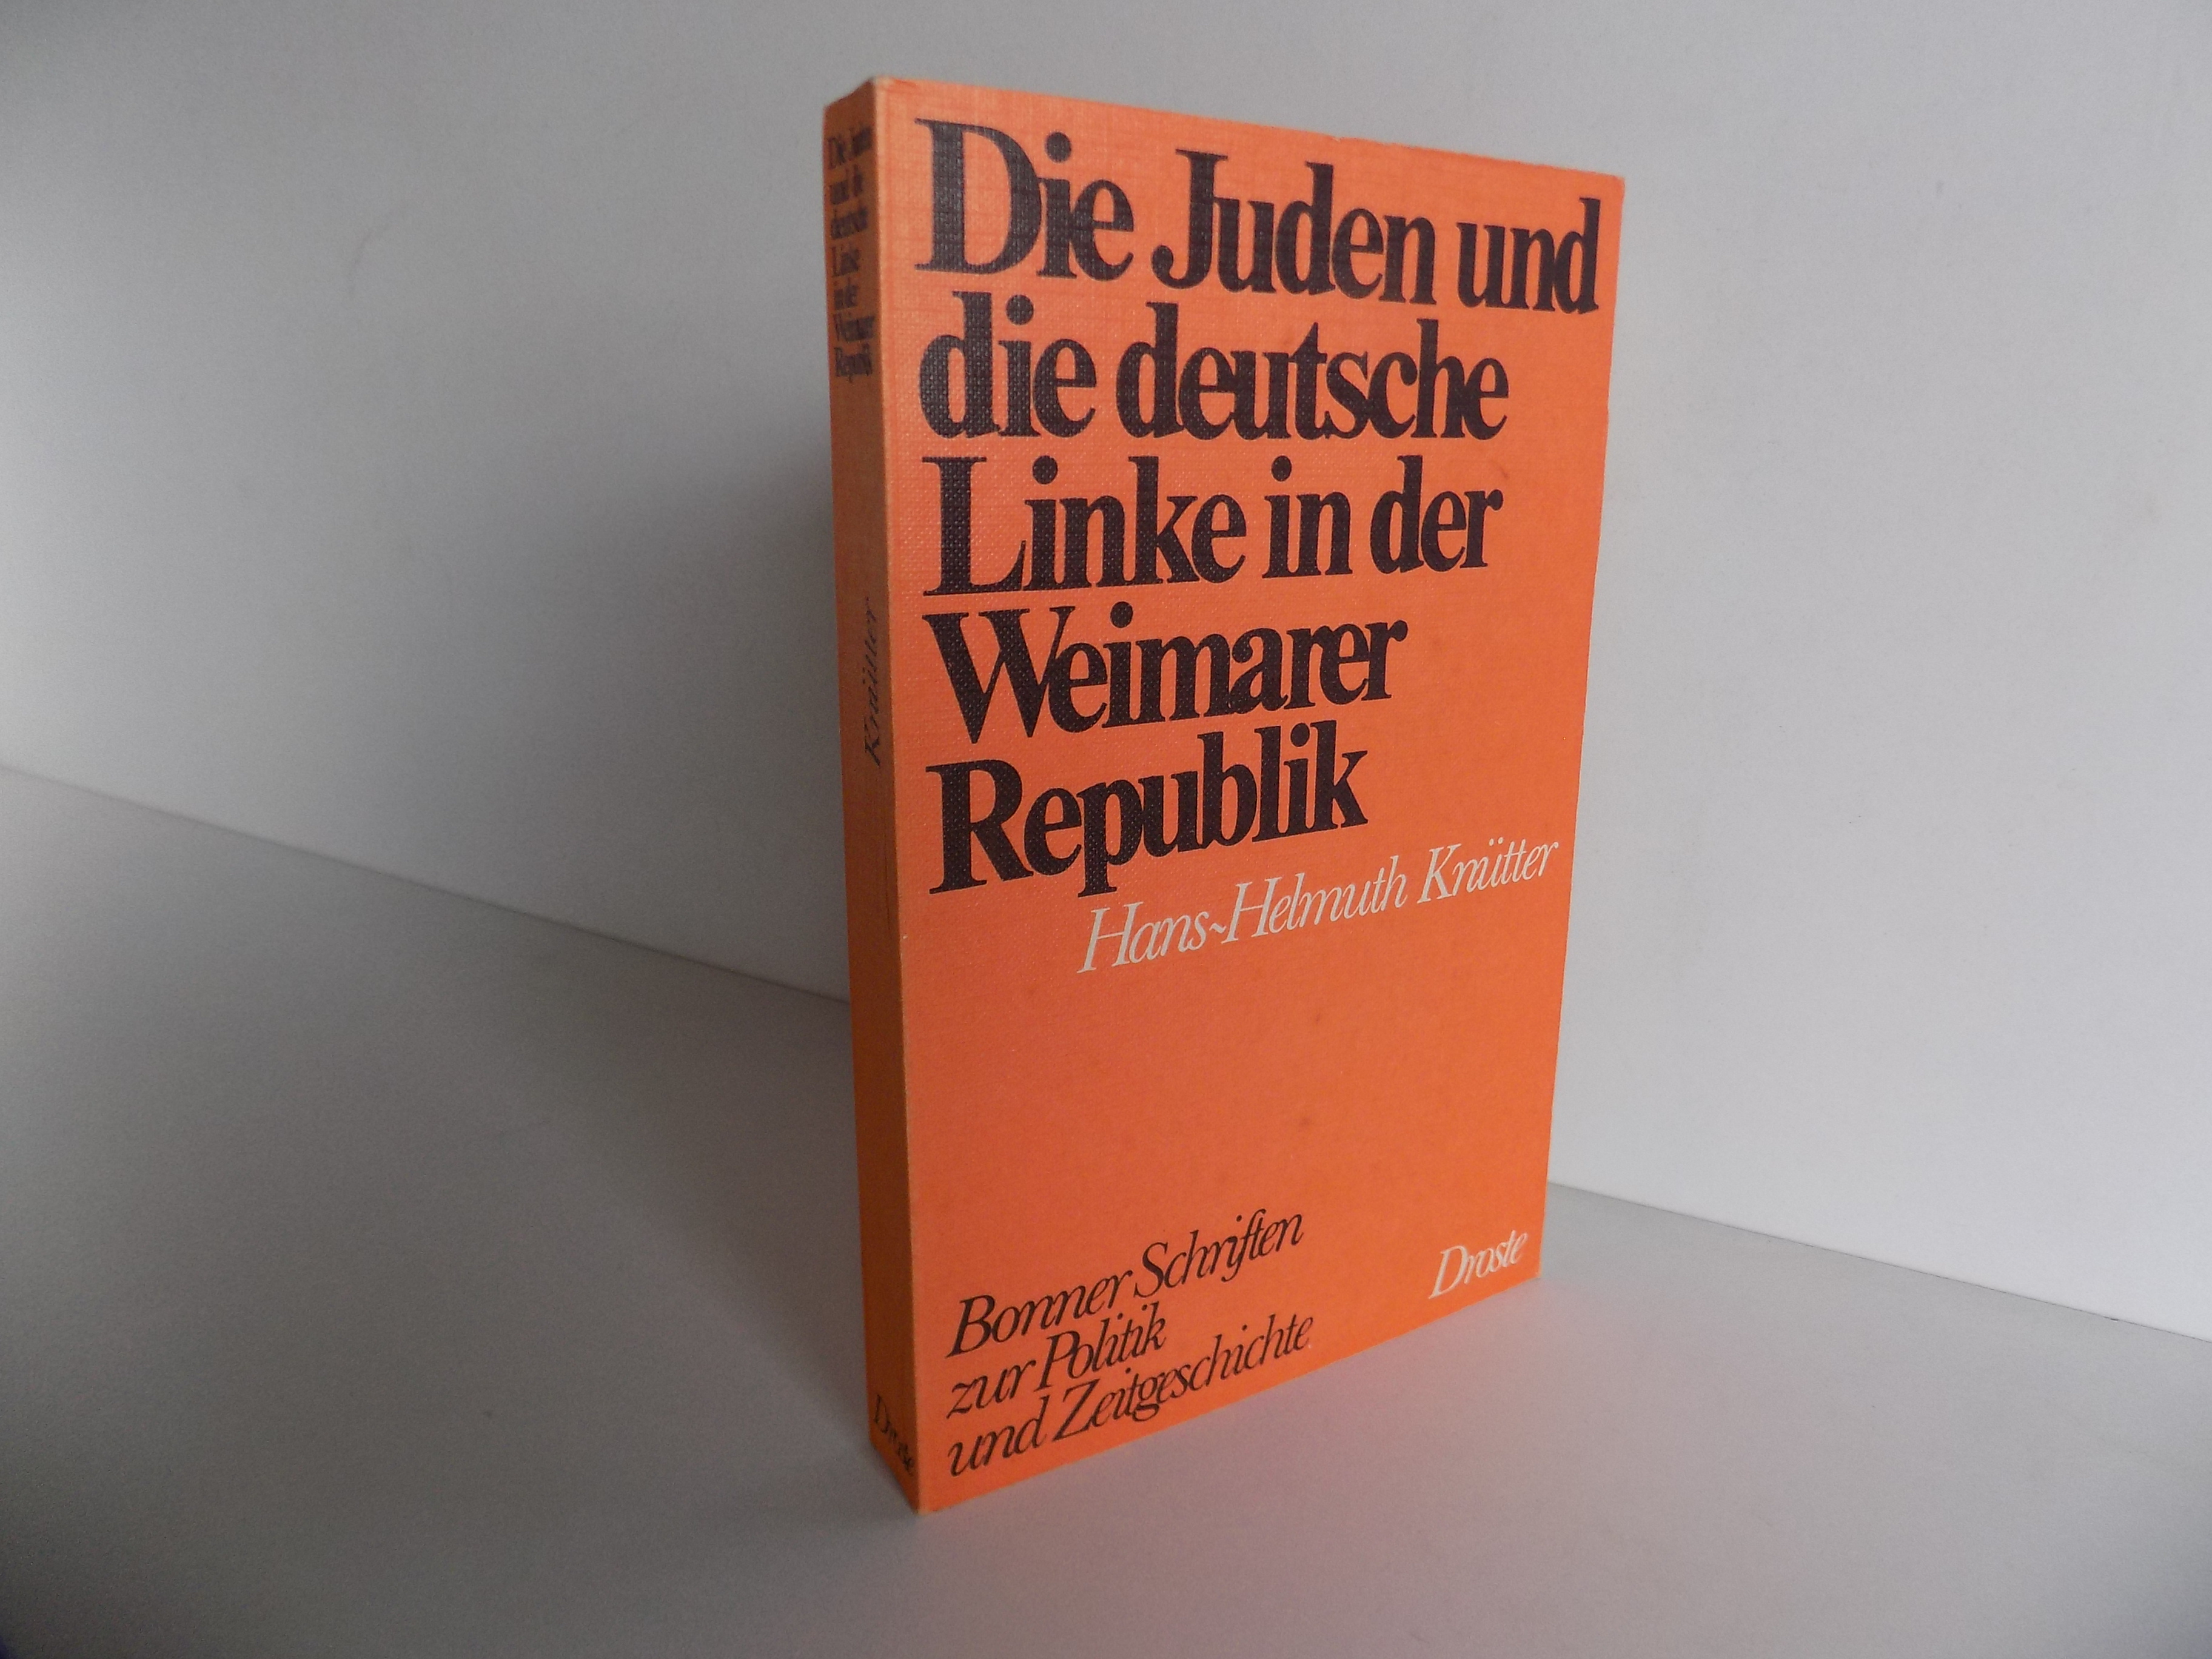 Die Juden und die deutsche Linke in der Weimarer Republik 1918-1933 (= Bonner Schriften zur Politik und Zeitgeschichte, Band 4). - Knütter, Hans-Helmuth